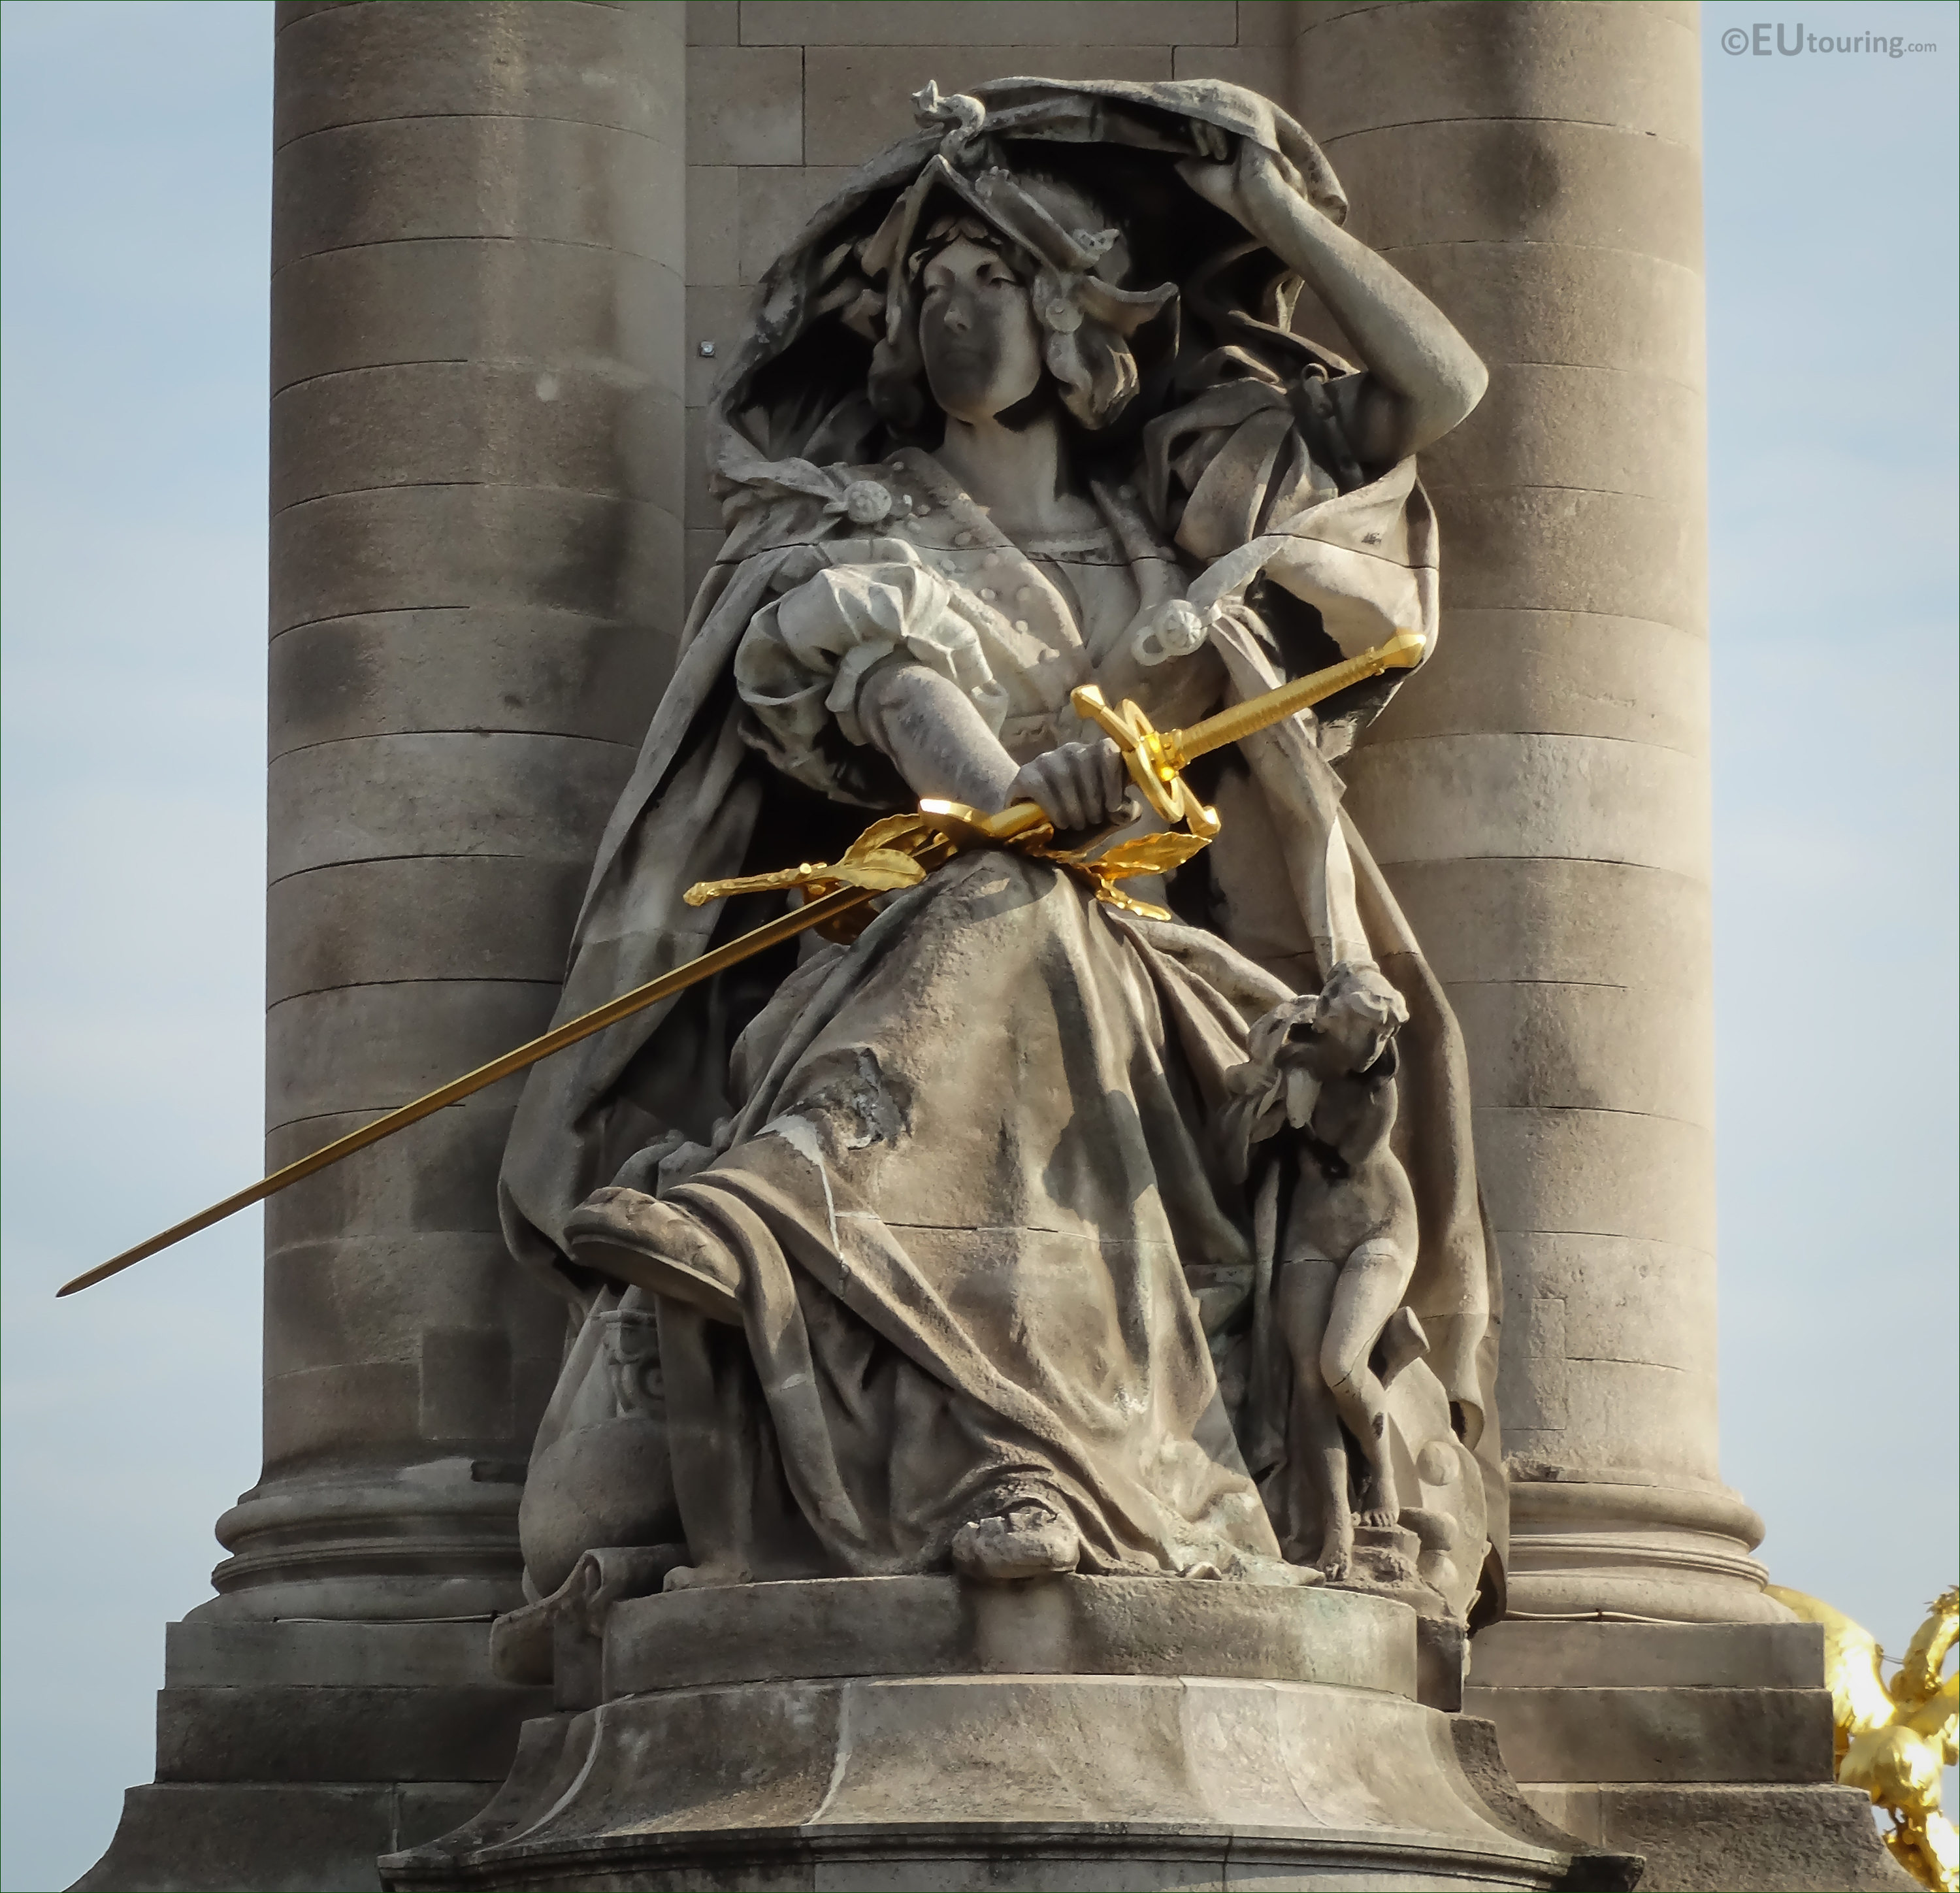 France de la Renaissance statue on Pont Alexandre III ...